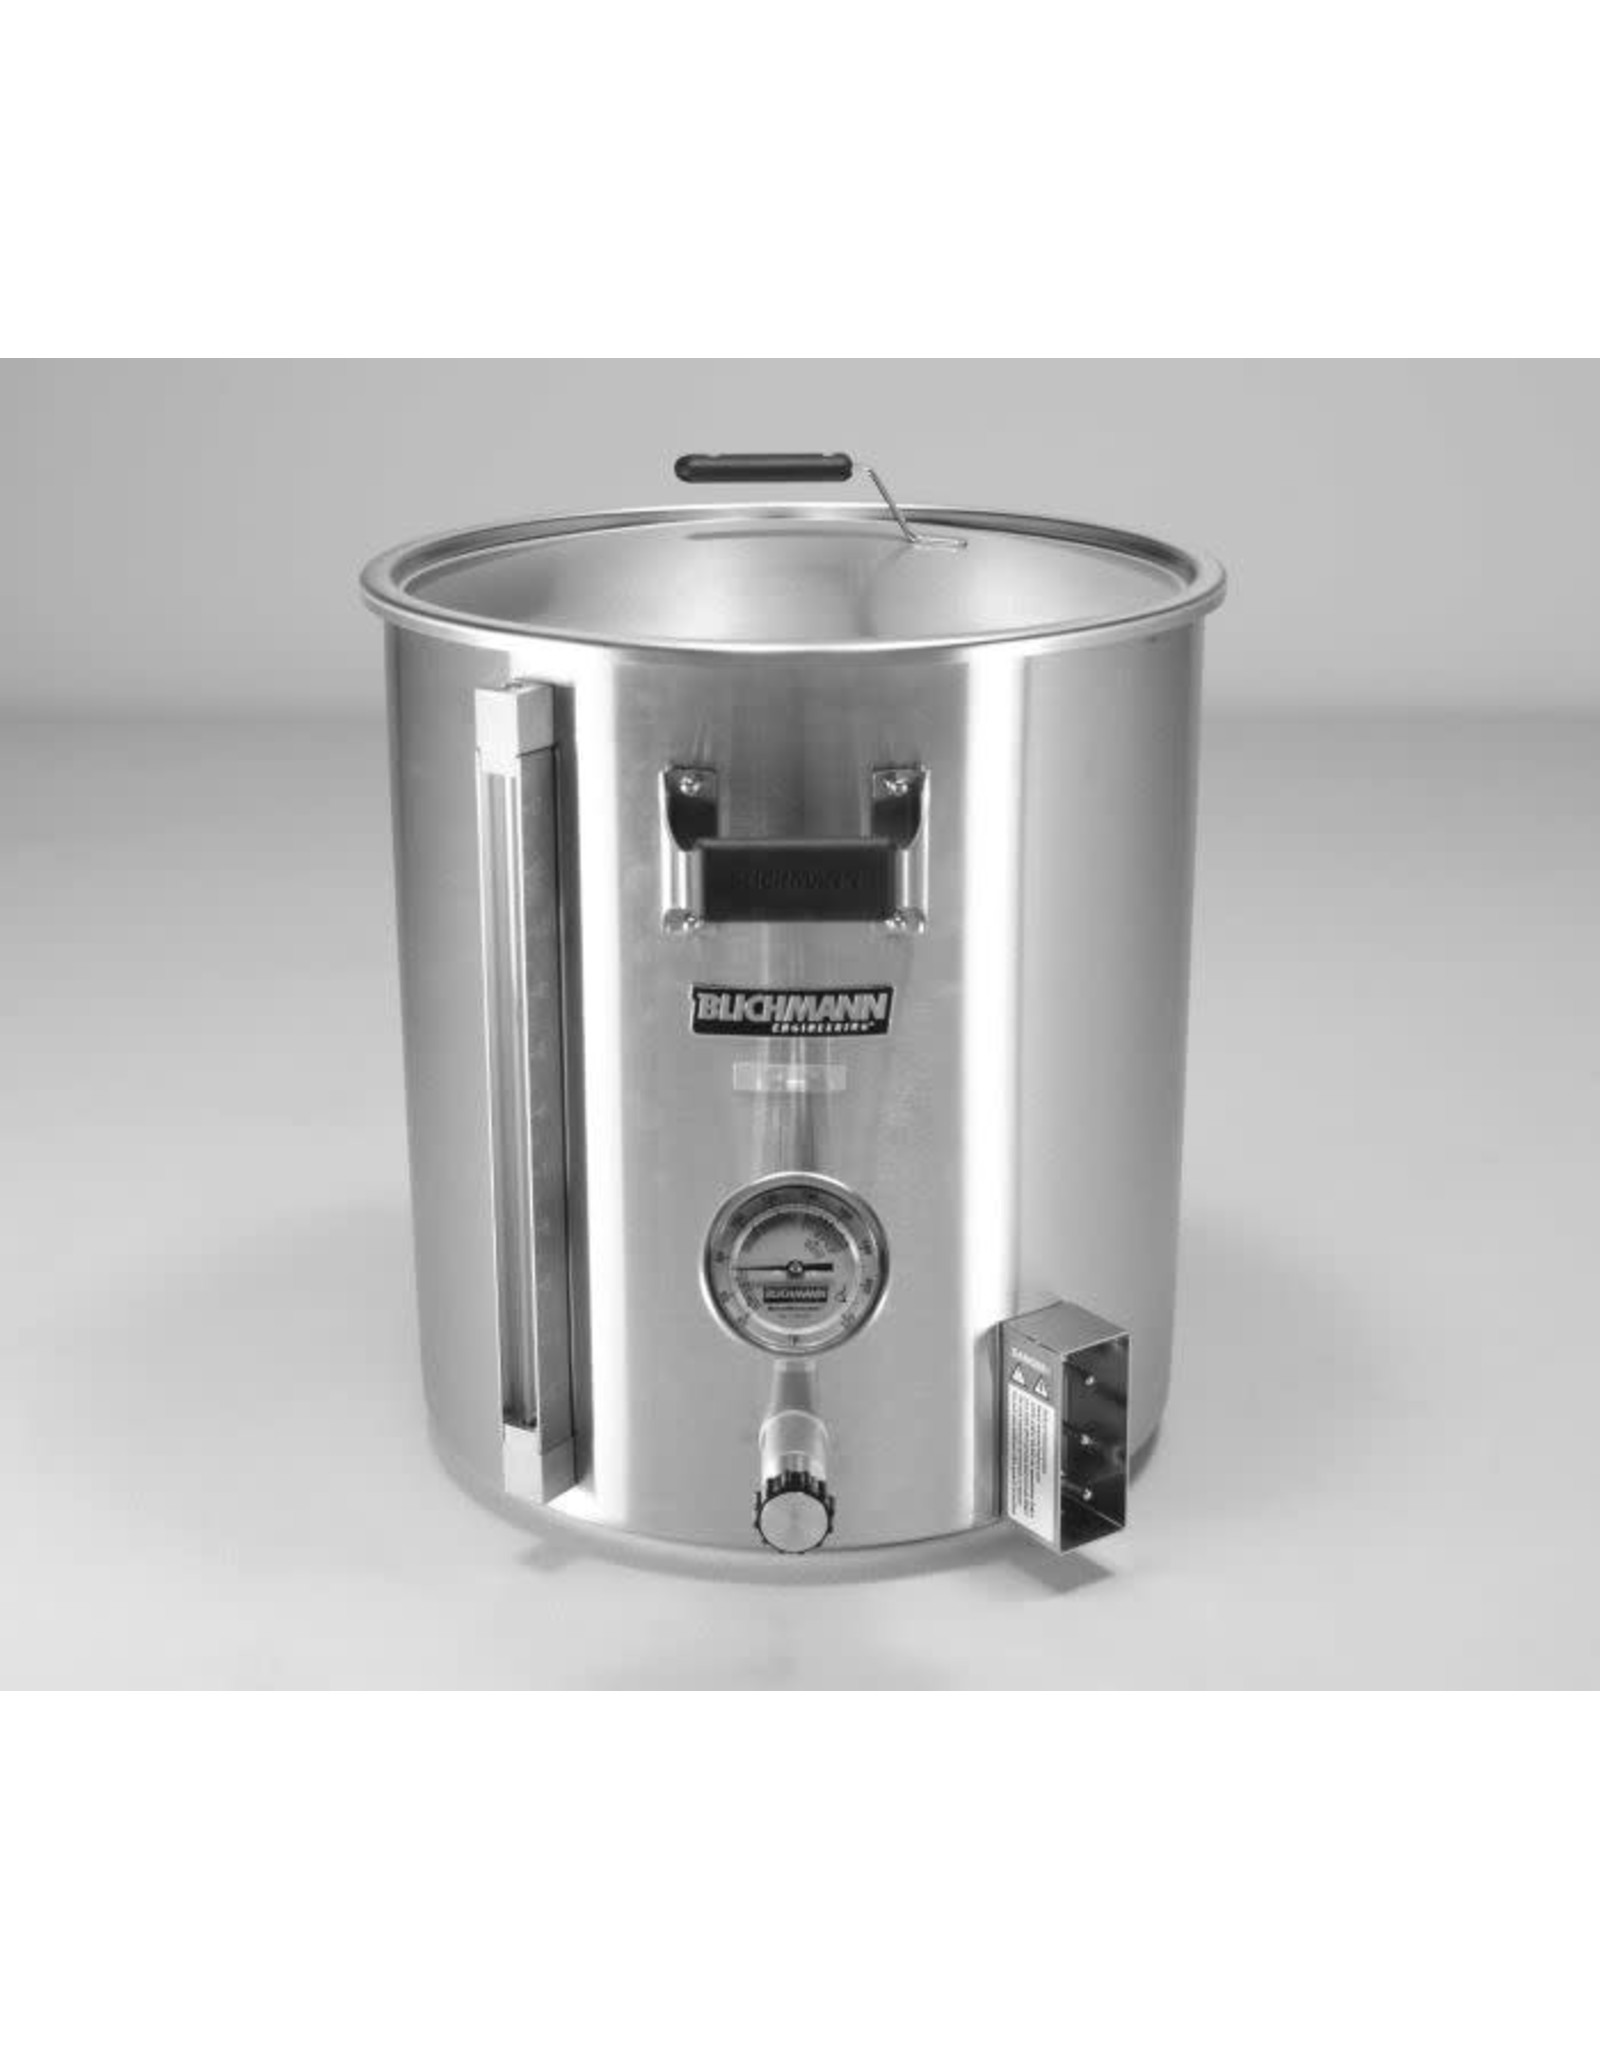 Blichmann Electric Kettles Boiler Maker G2 120V Blichmann 7.5 Gal